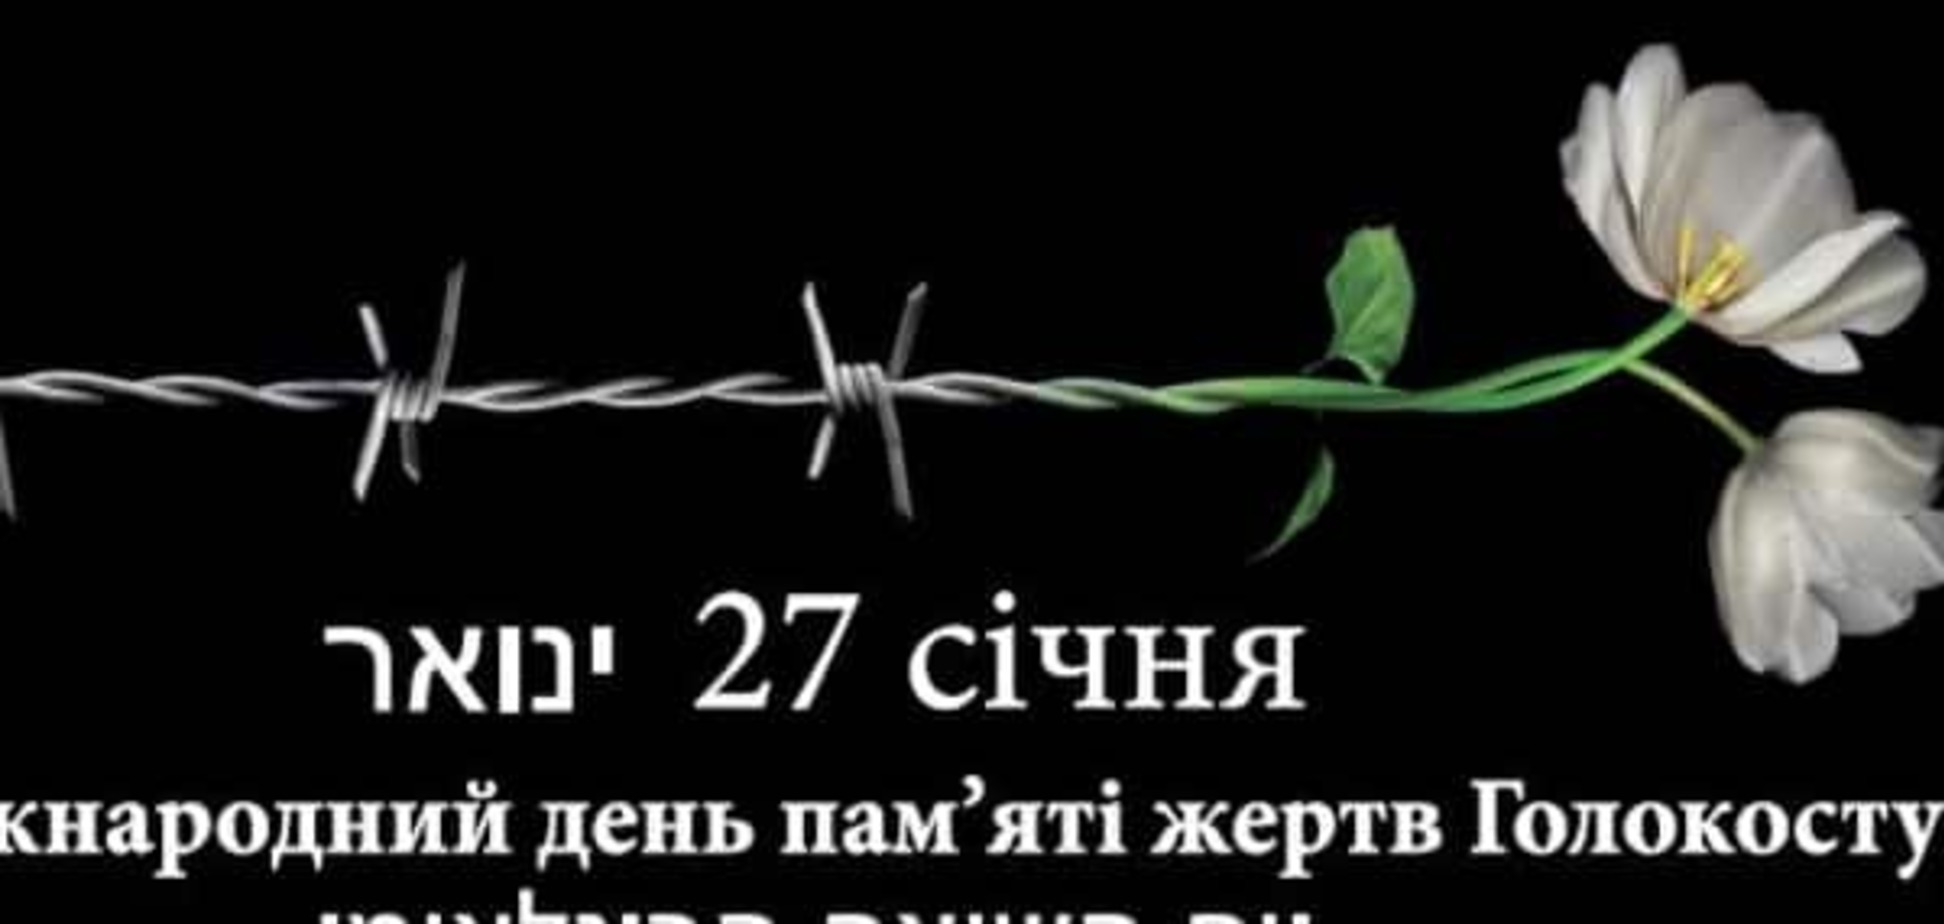 Украина почтит память жертв Холокоста